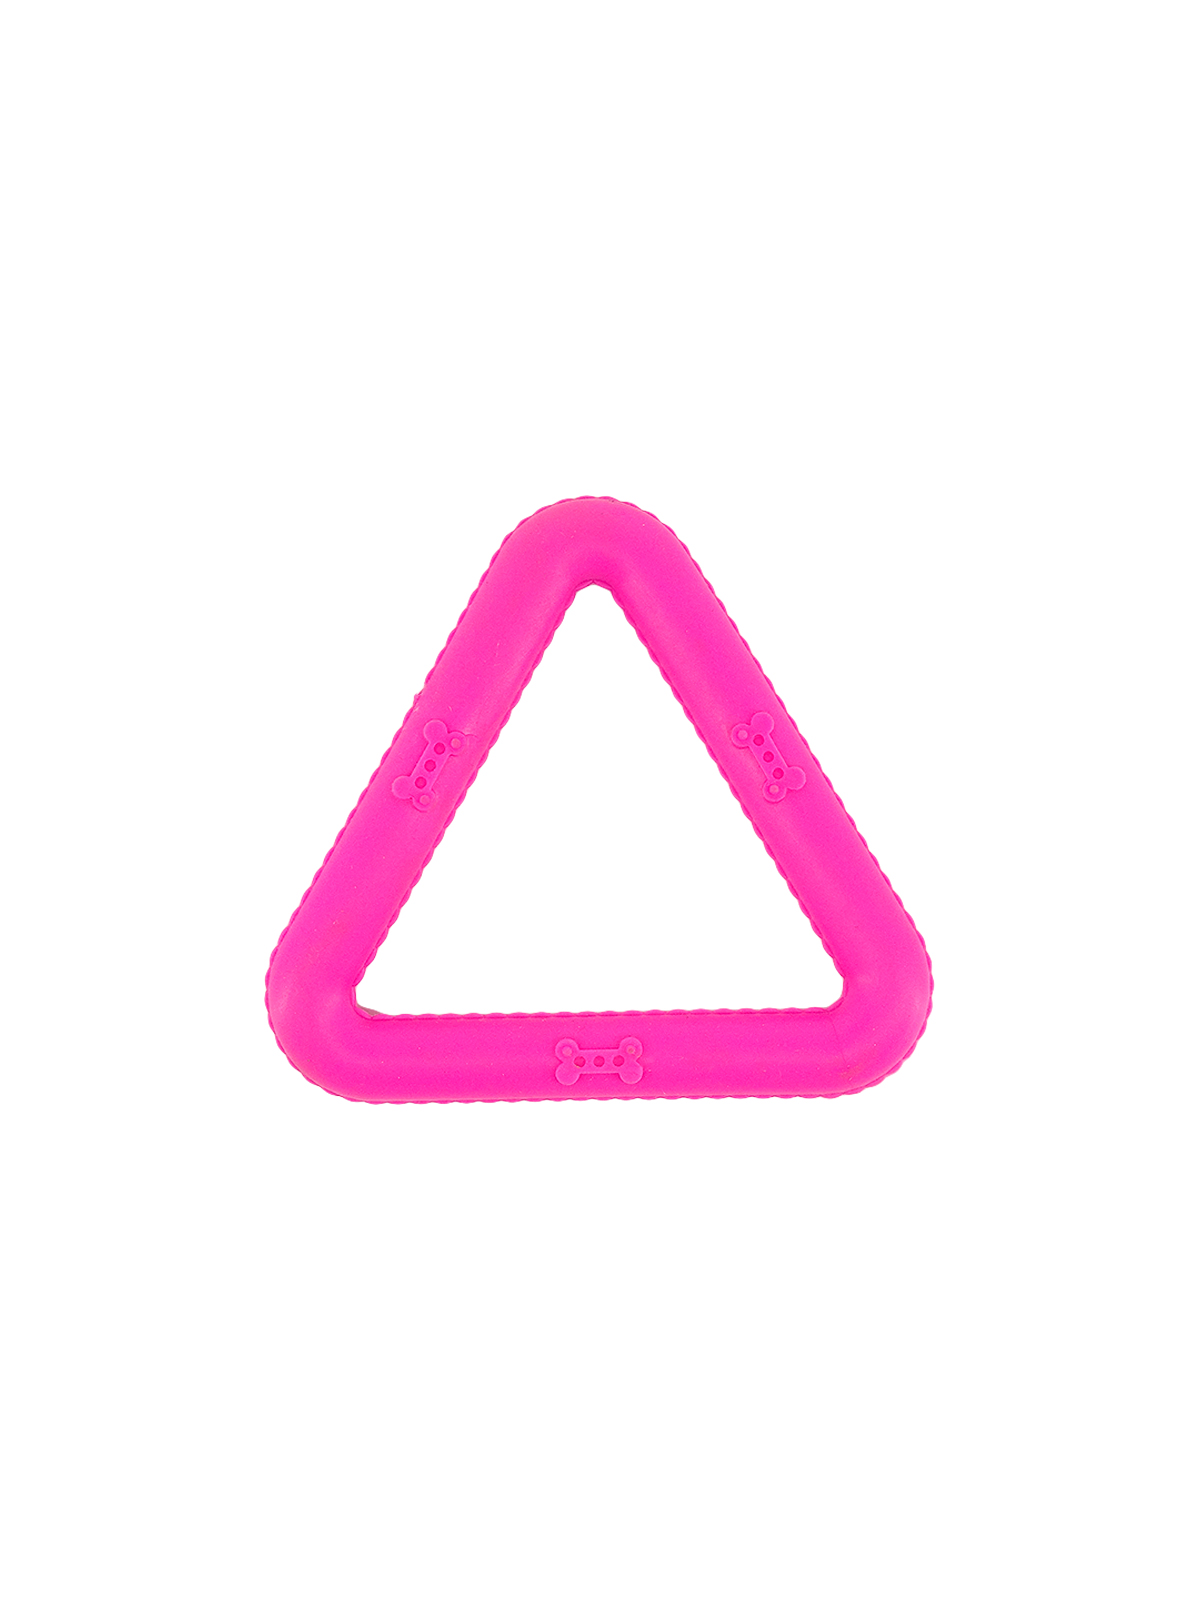 Игрушка-грызун для животных "Треугольник", 8,5 см, микс цвета